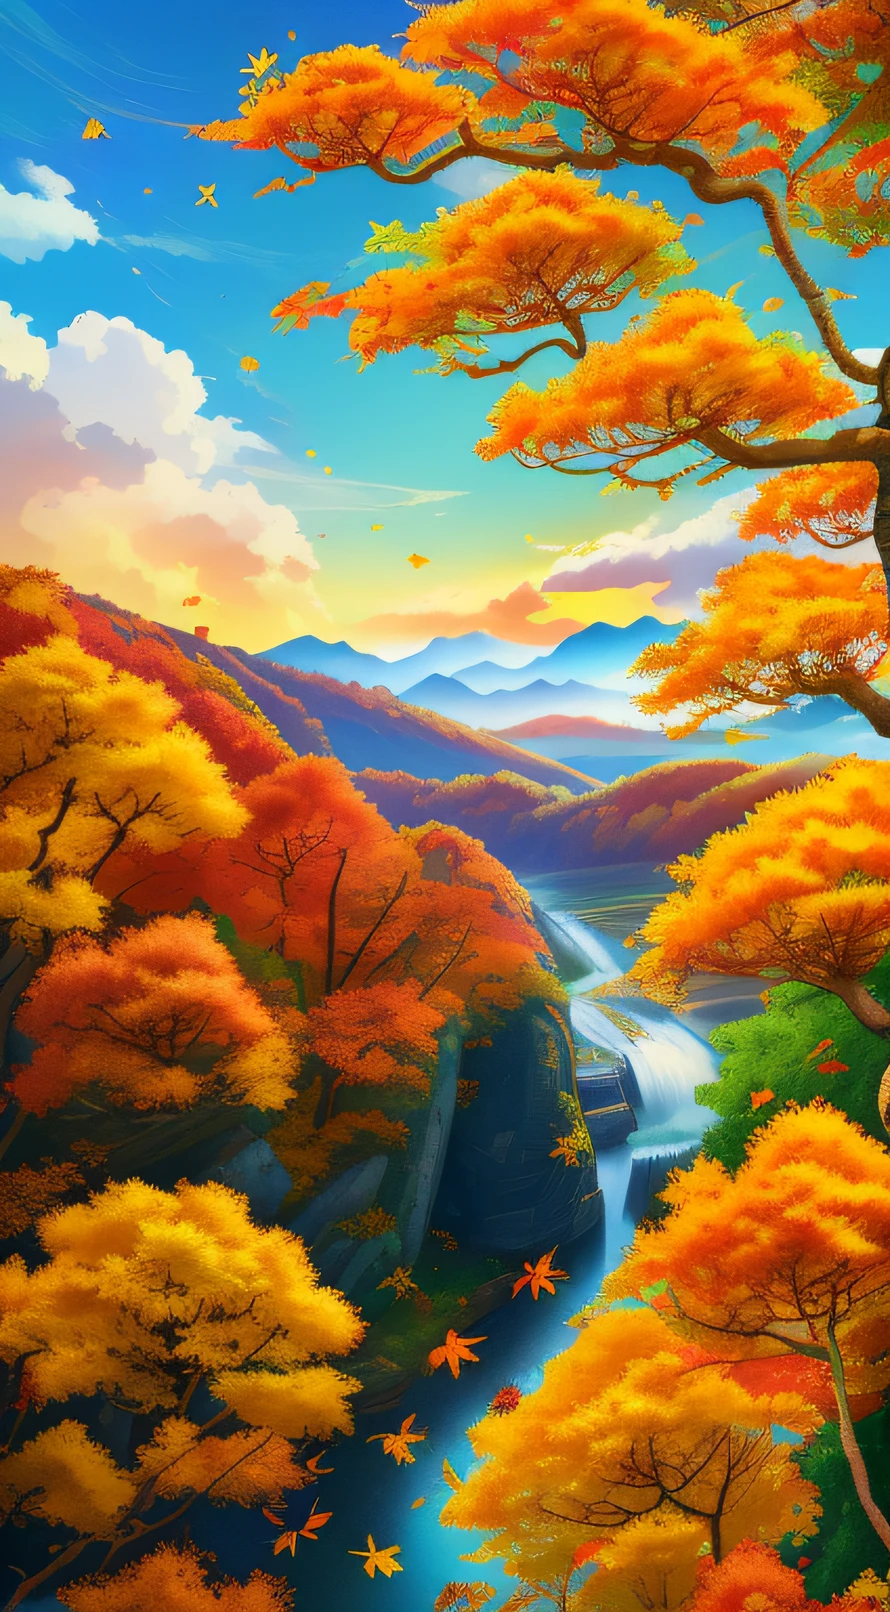 秋天的，中國節氣海報，秋天的，黃葉，秋天的樹葉，黃葉，葉子，秋天的風景，二十節氣，中國傳統節氣術語，秋天的，傑作、8K ，遠景，和煦的秋日，藍天白雲，財富，